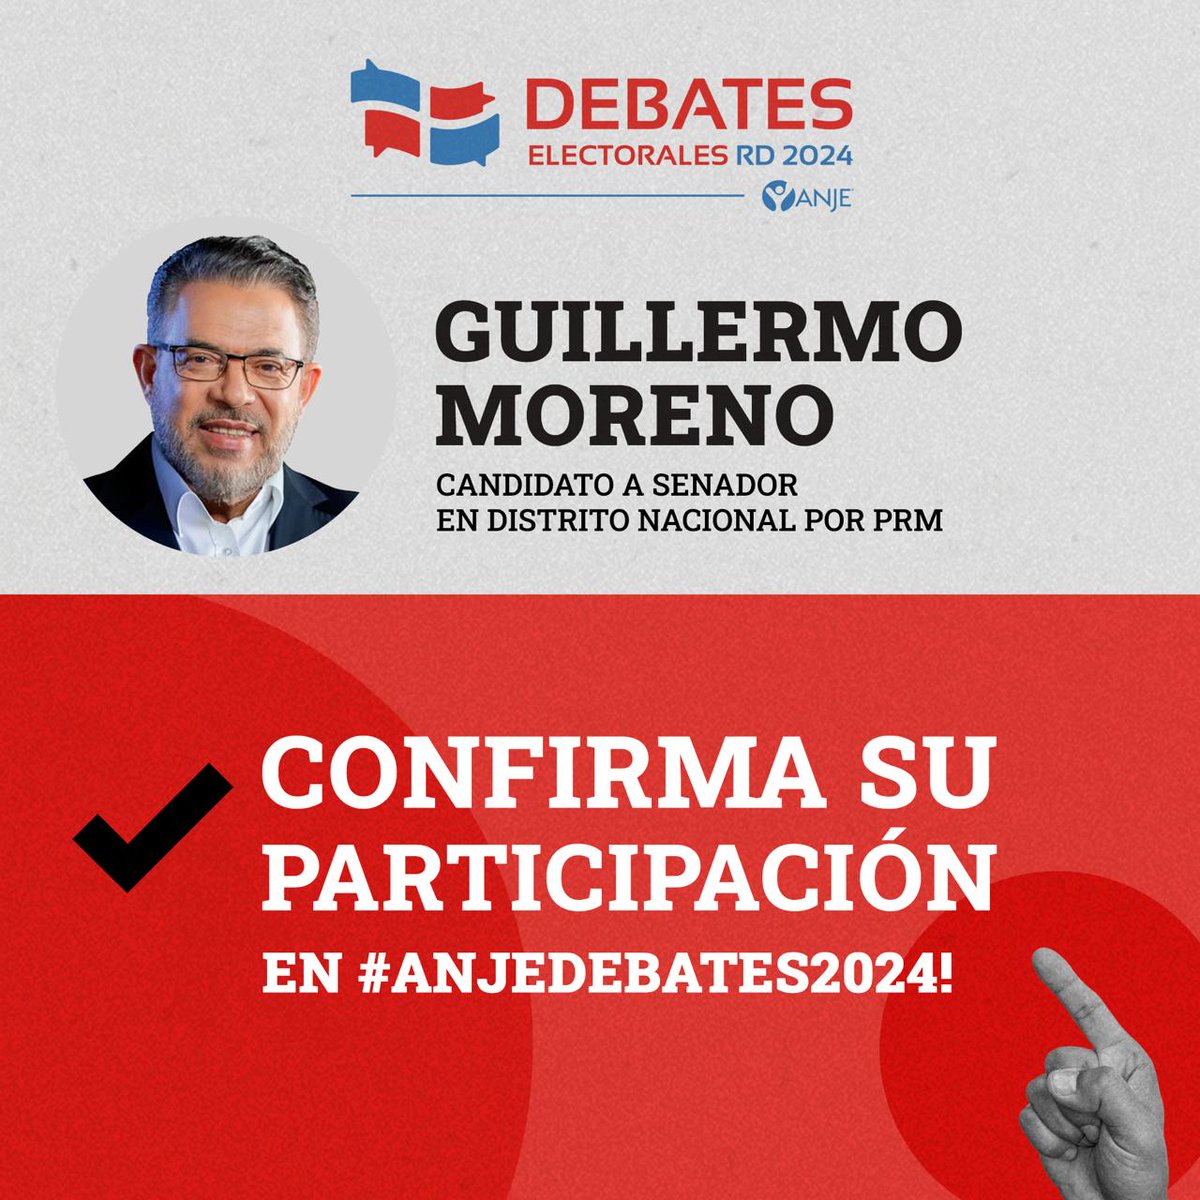 El candidato a senador por el @prm_oficial @MorenoGuillermo confirmó hoy su participación en los #DebatesAnje #RDMereceDebates #DebatesRD #AnjeDebates2024